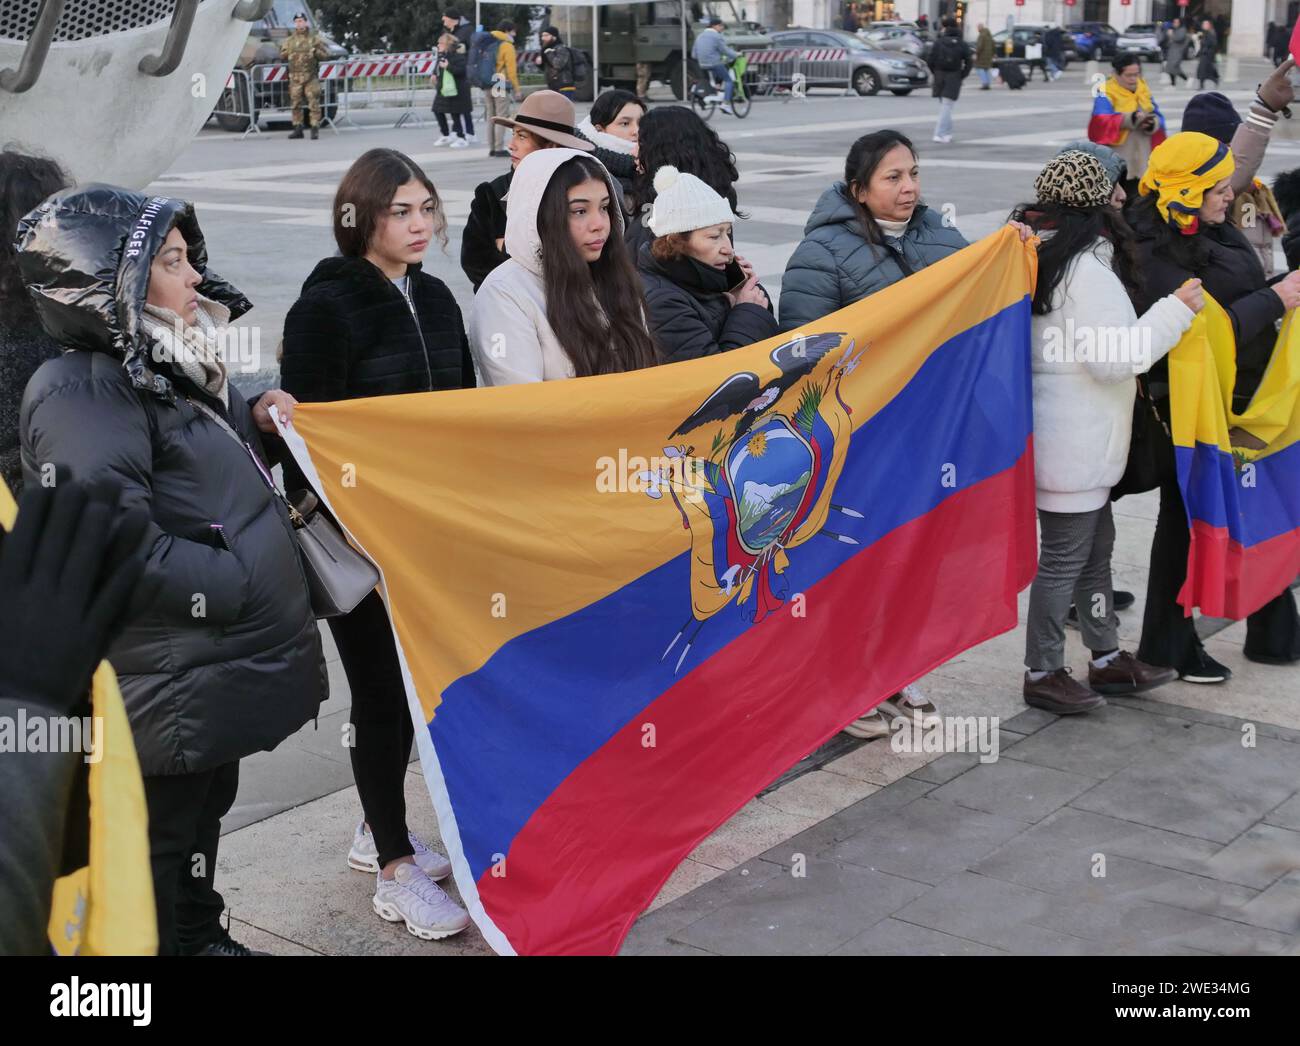 Manifestation de Milan pour la paix en Équateur sur la place centrale de la gare, Lombardie, Italie Banque D'Images